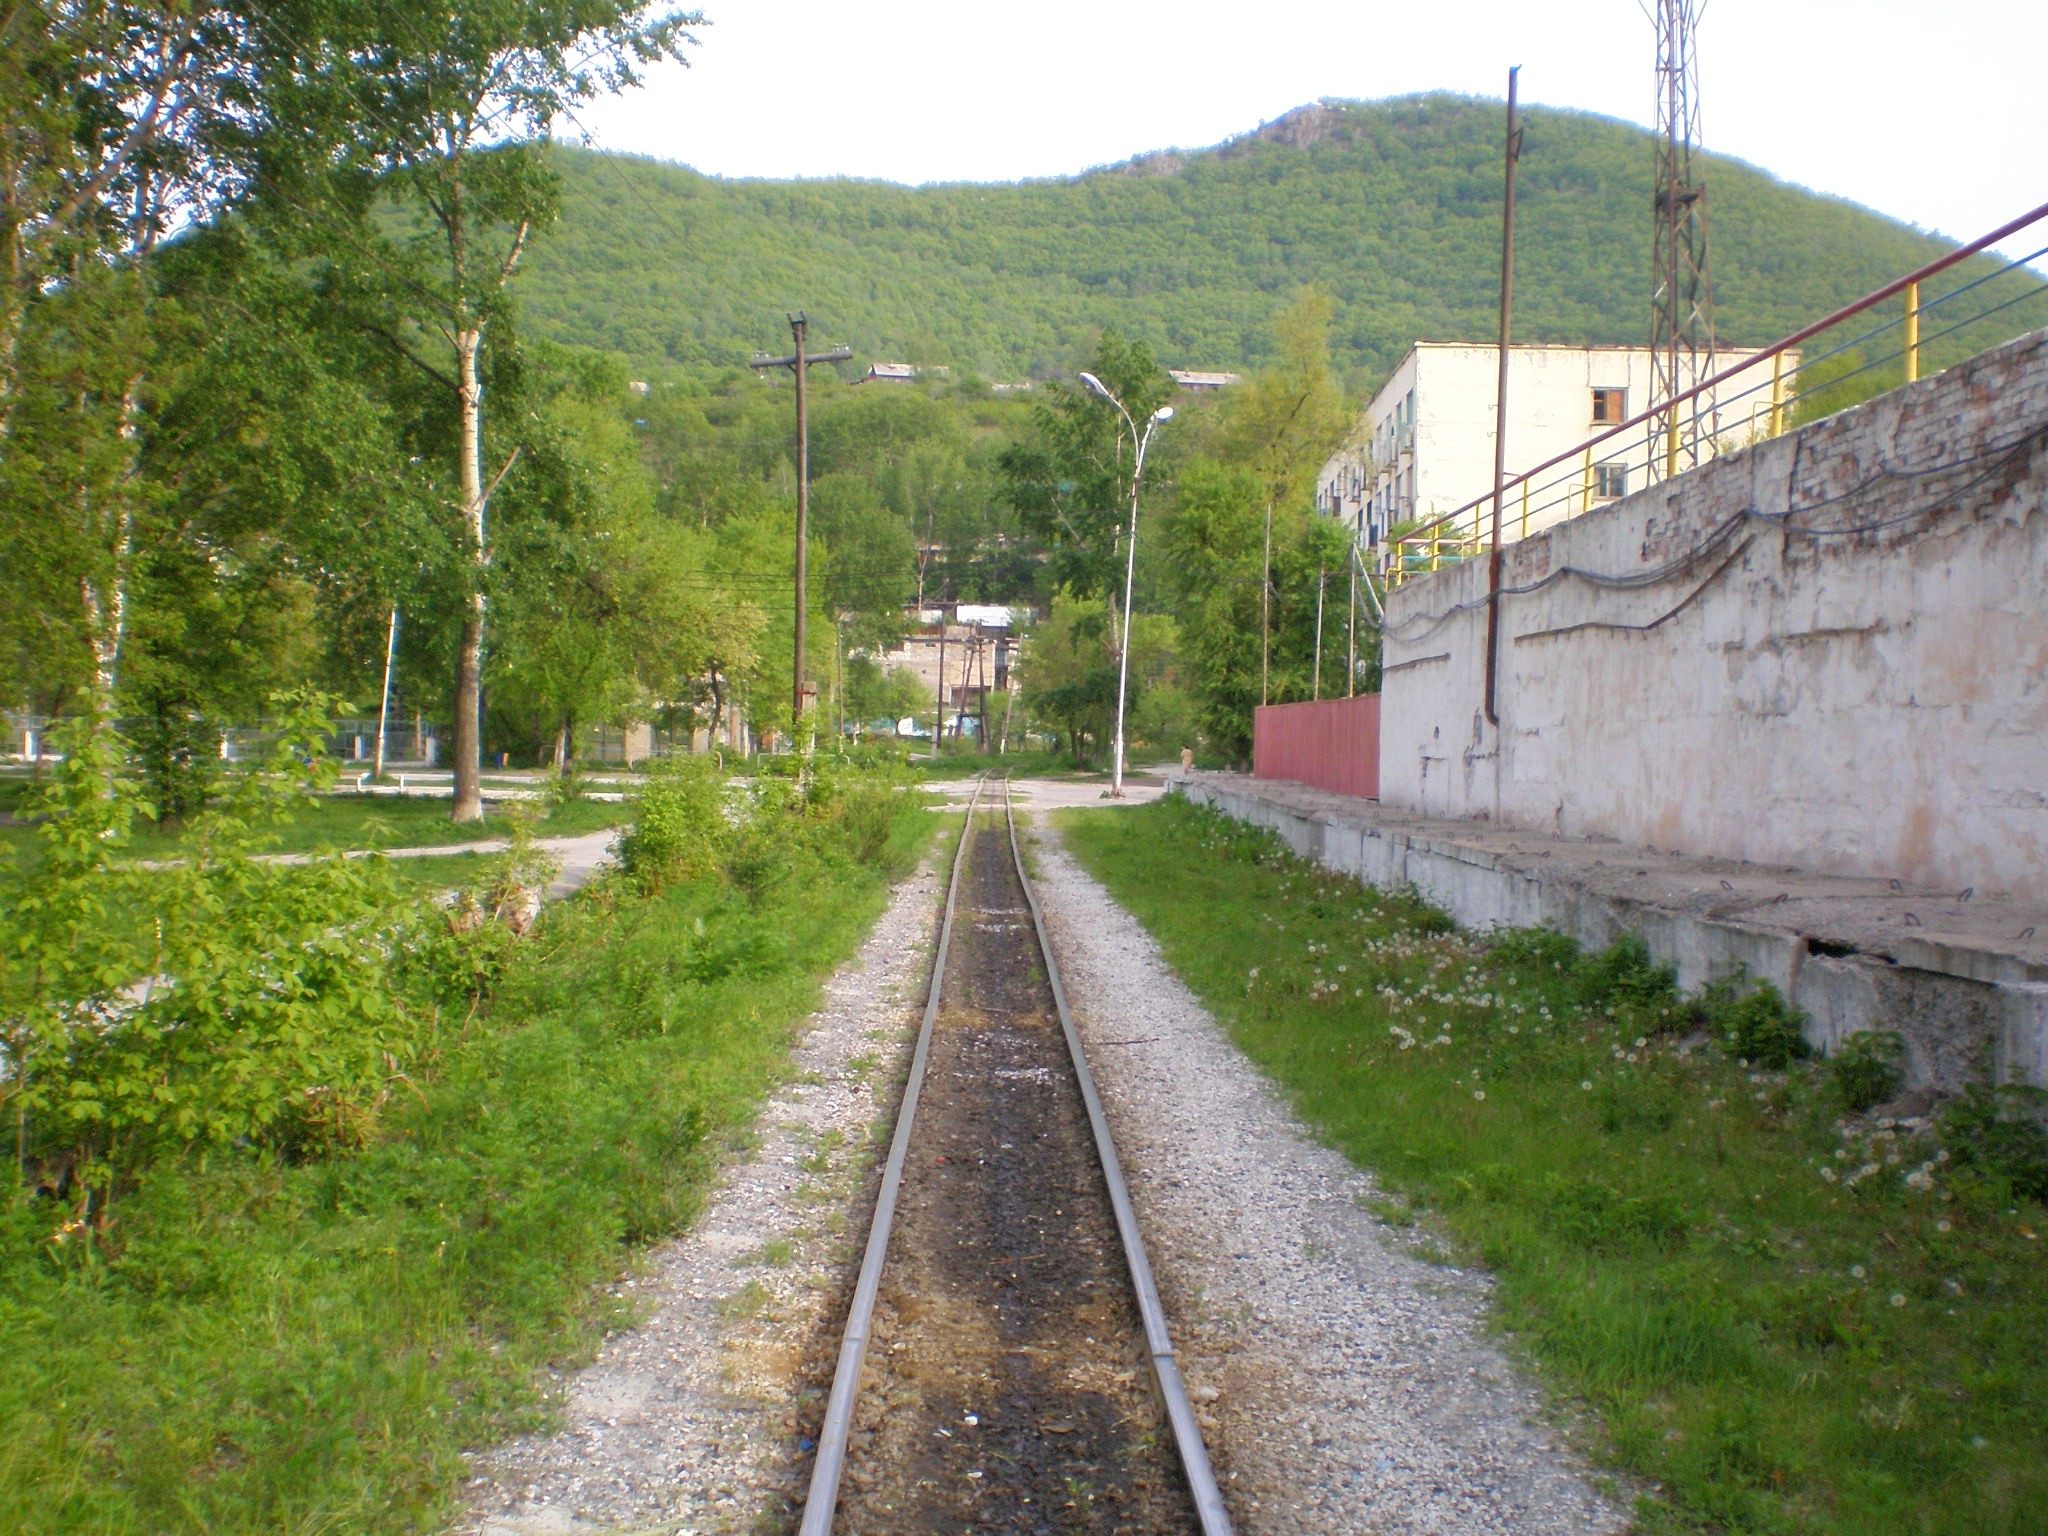 Тетюхинская узкоколейная железная дорога  —  фотографии, сделанные в 2008 году (часть 10)